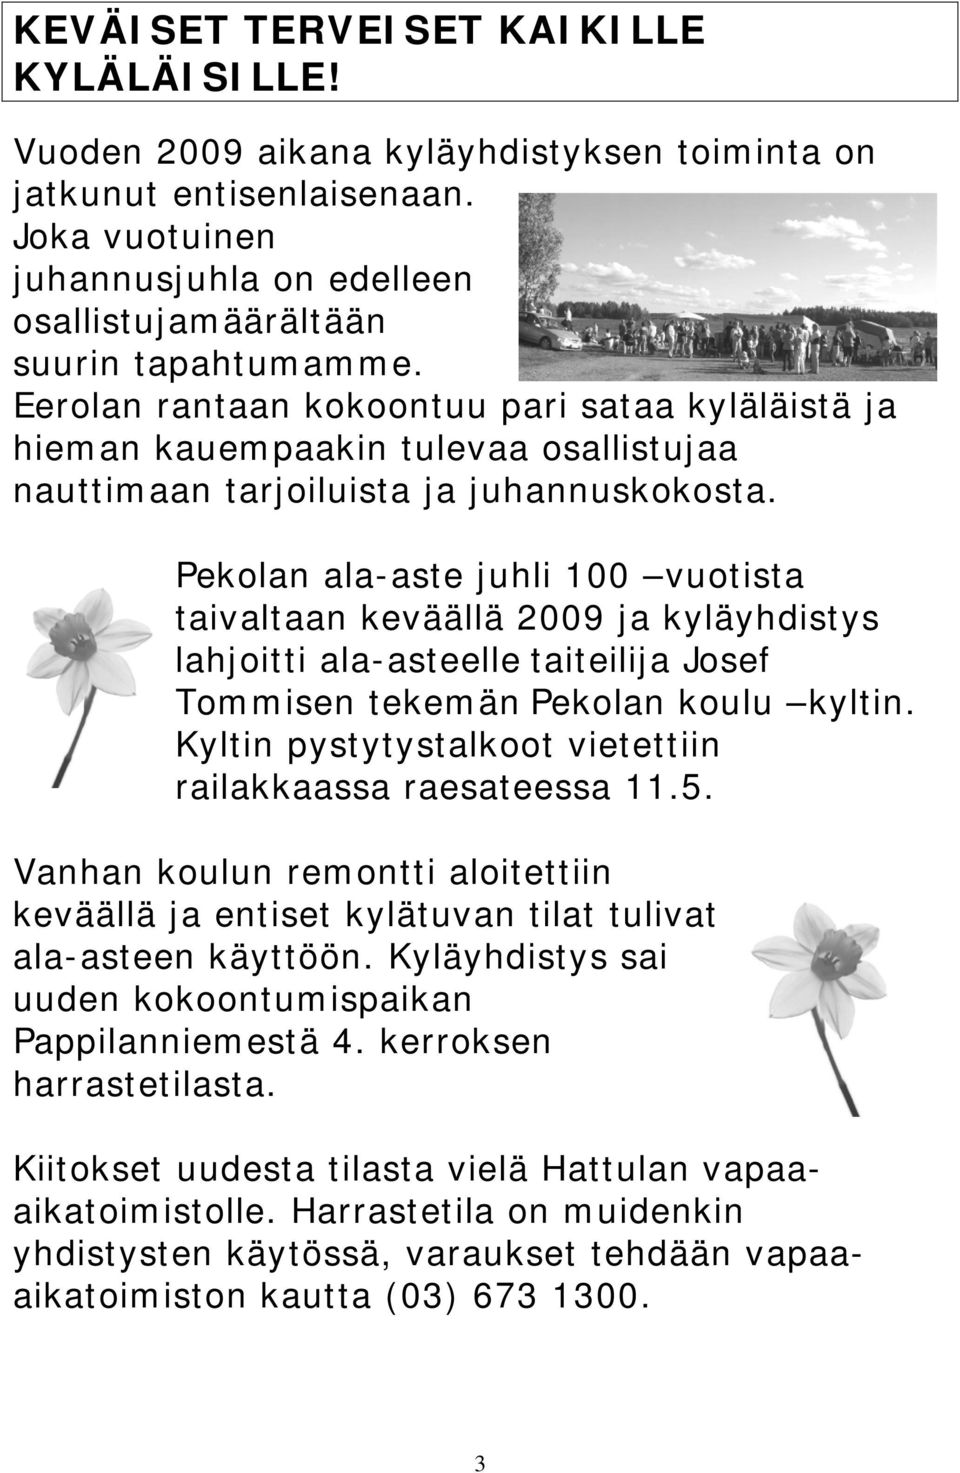 Pekolan ala-aste juhli 100 vuotista taivaltaan keväällä 2009 ja kyläyhdistys lahjoitti ala-asteelle taiteilija Josef Tommisen tekemän Pekolan koulu kyltin.